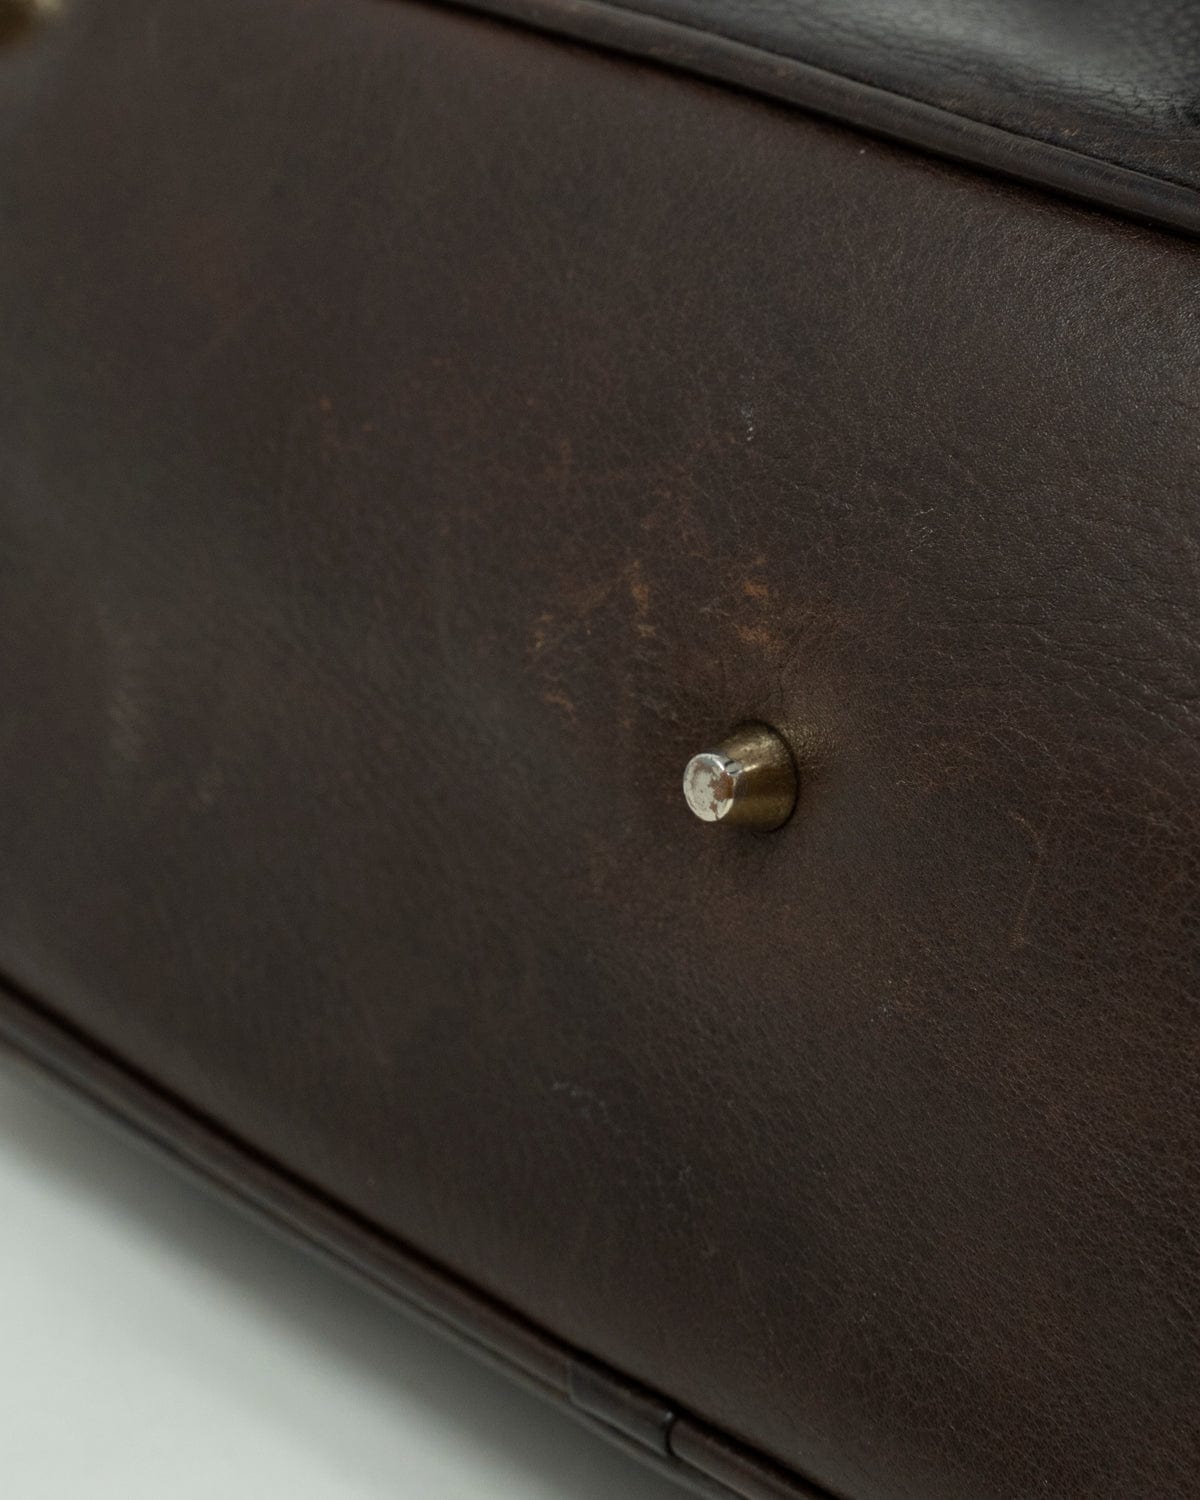 Burberry Burberry Nova Check Canvas and leather shoulder bag